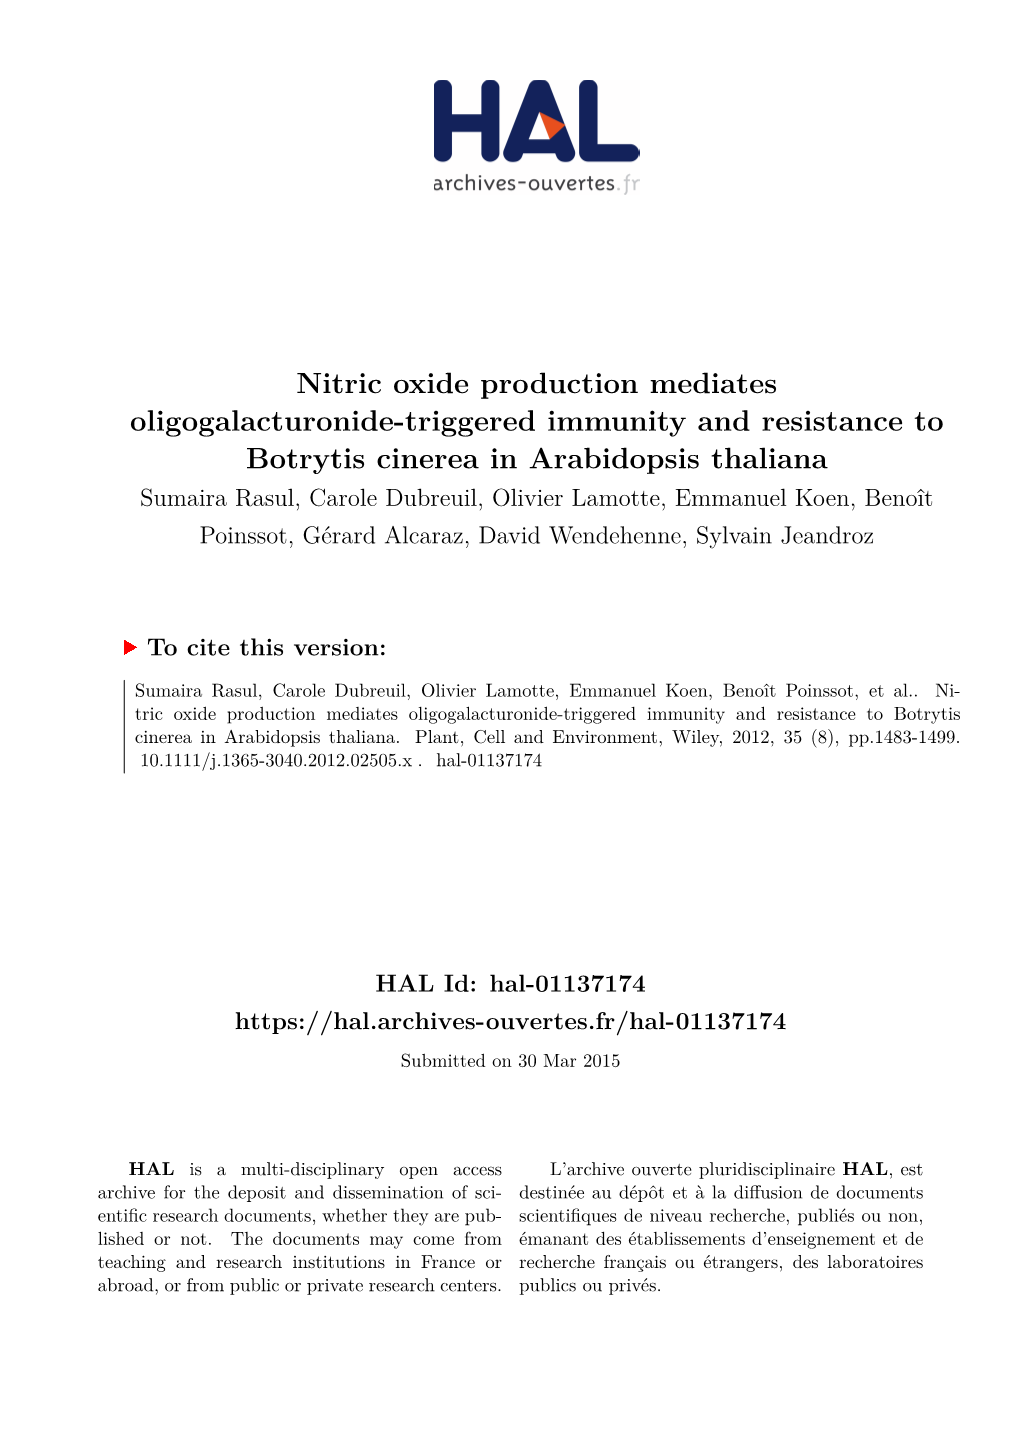 Nitric Oxide Production Mediates Oligogalacturonide-Triggered